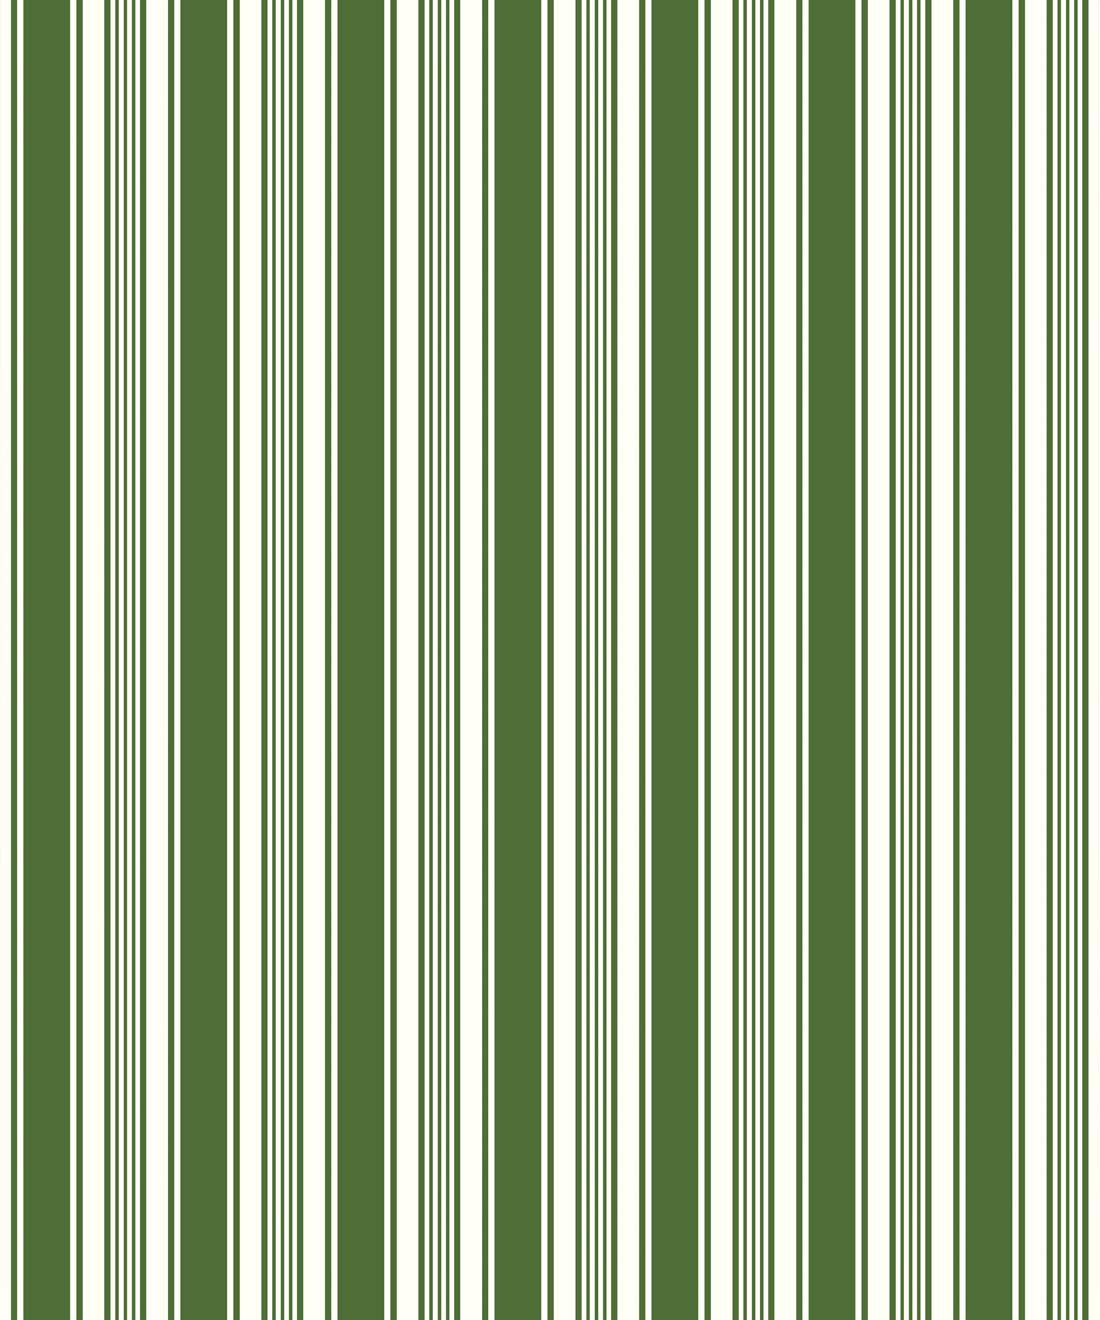 Stripes Wallpaper  Striped Wallpaper   Change Your Space Milton